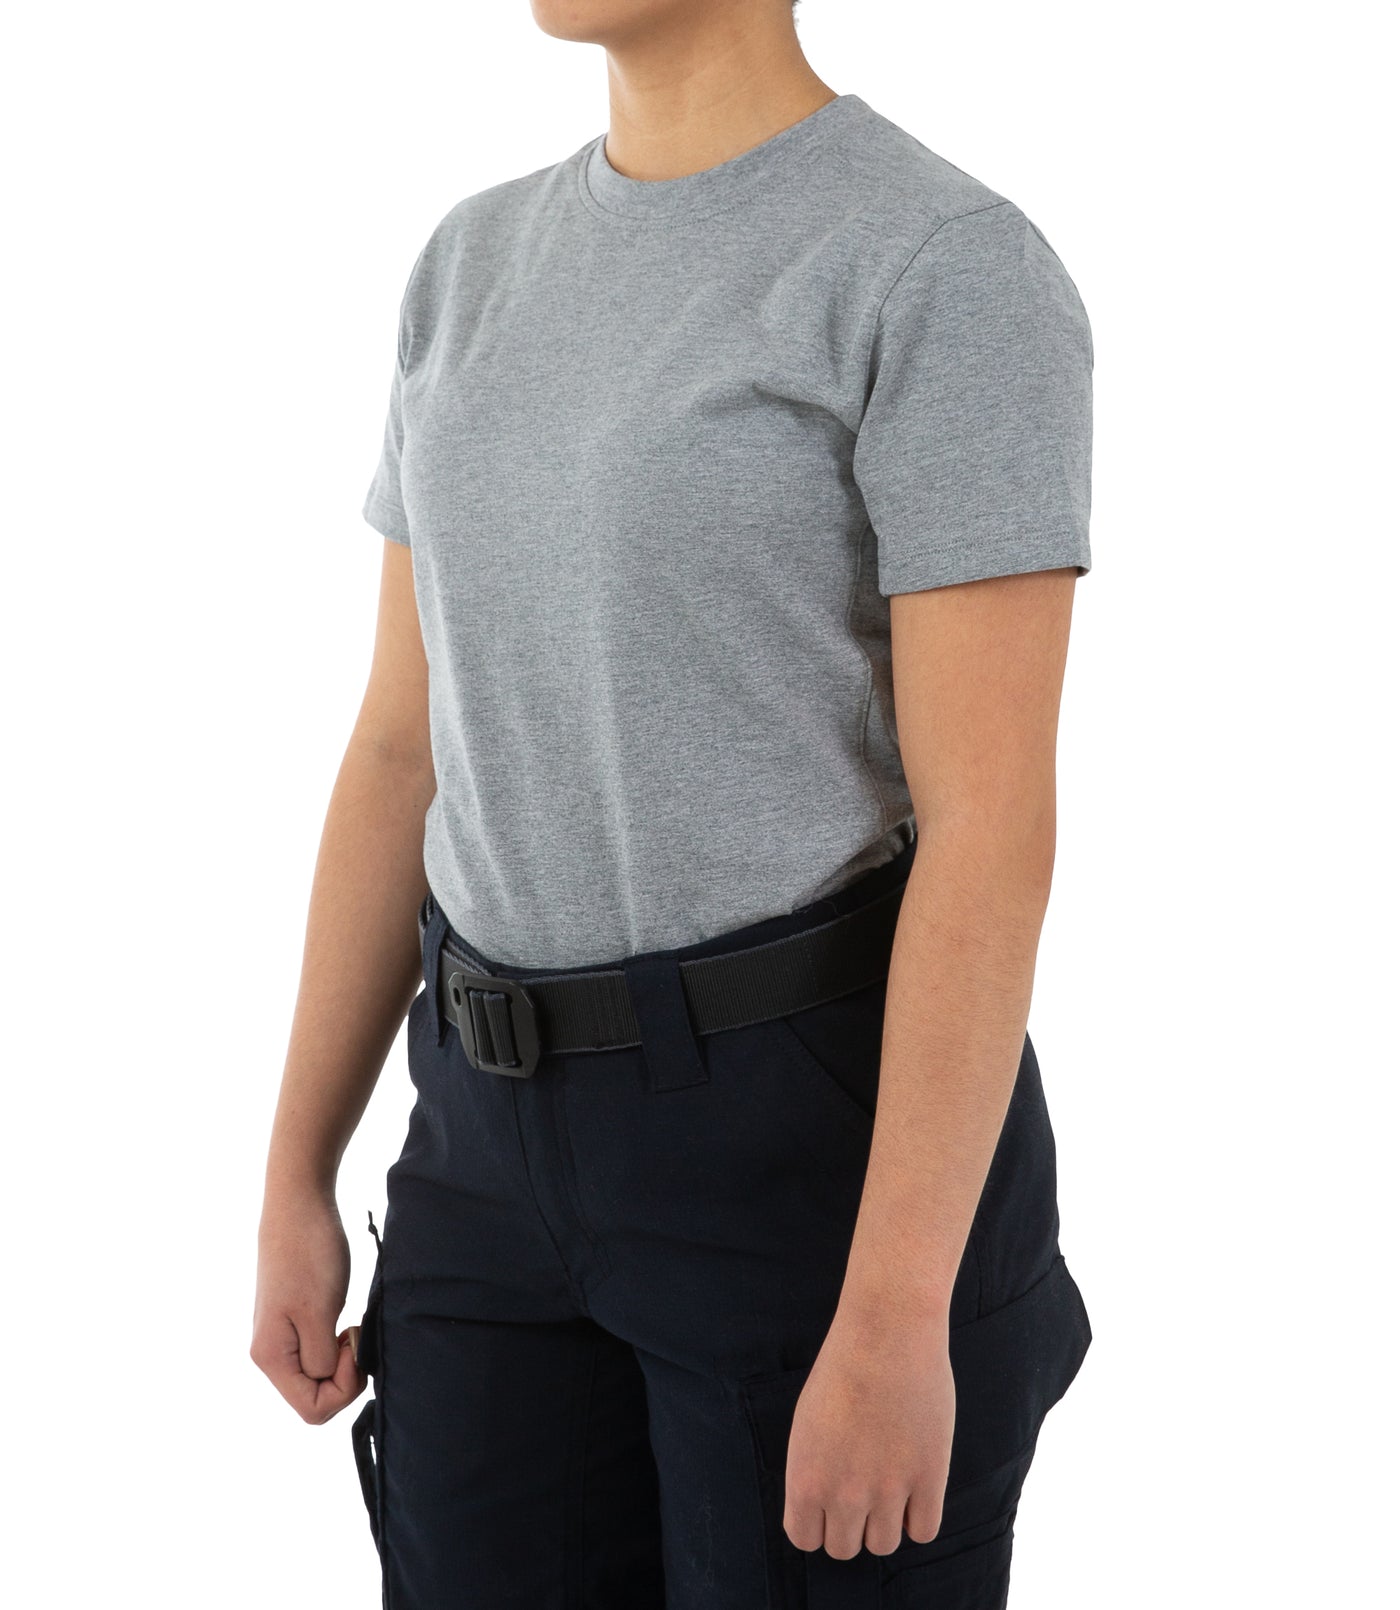 Women's Tactix Cotton Short Sleeve T-Shirt